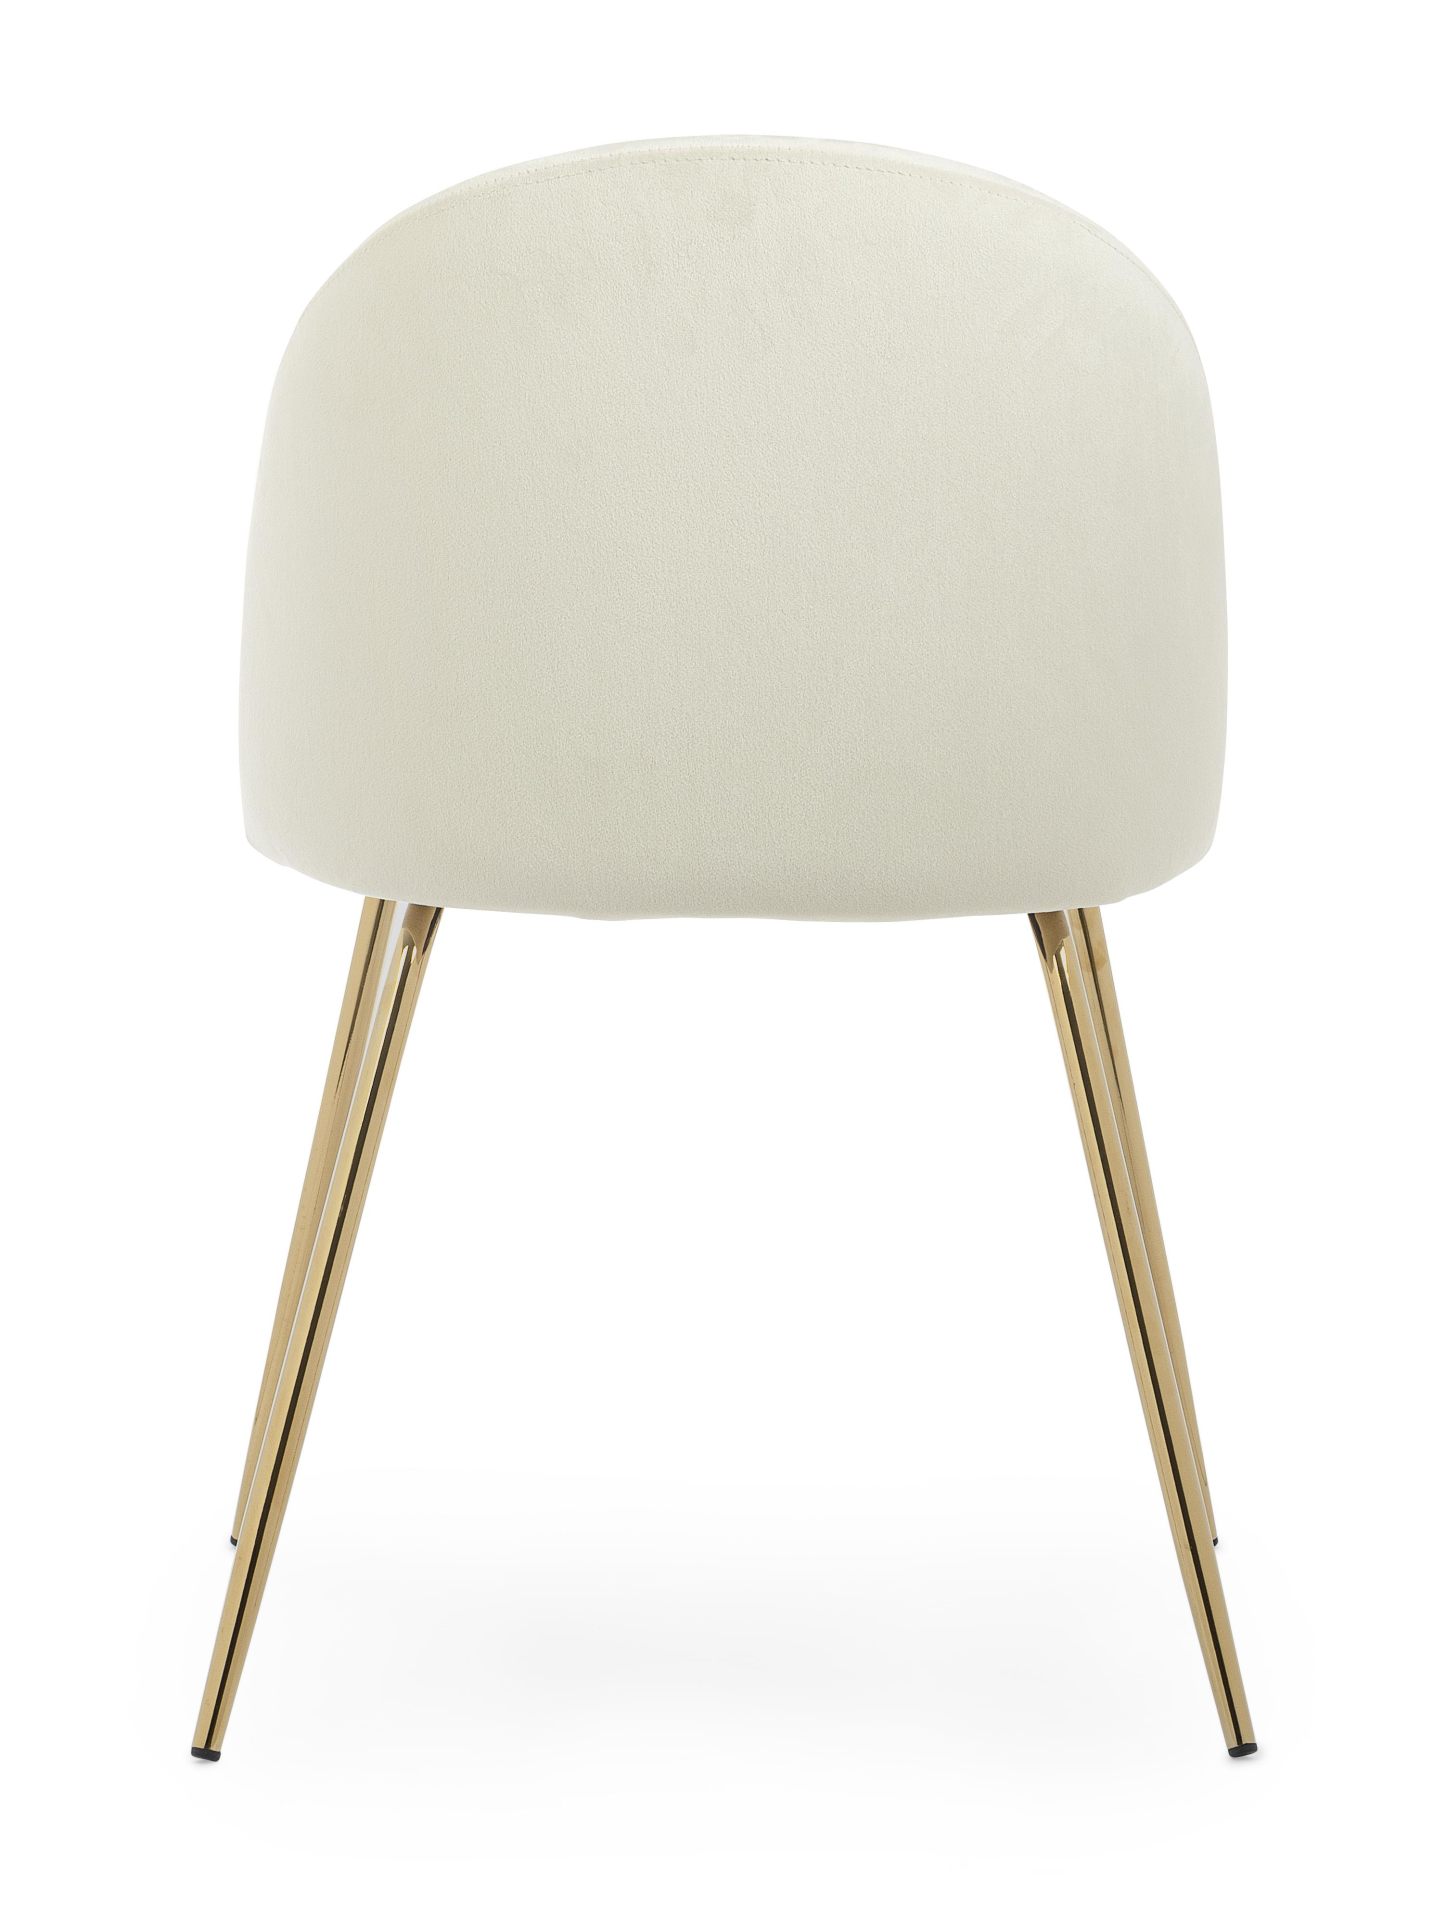 Der Esszimmerstuhl Tania überzeugt mit seinem modernem Design. Gefertigt wurde der Stuhl aus einem Samt-Bezug, welcher einen weißen Farbton besitzt. Das Gestell ist aus Metall und ist in einem goldenem Farbton. Die Sitzhöhe beträgt 46 cm.